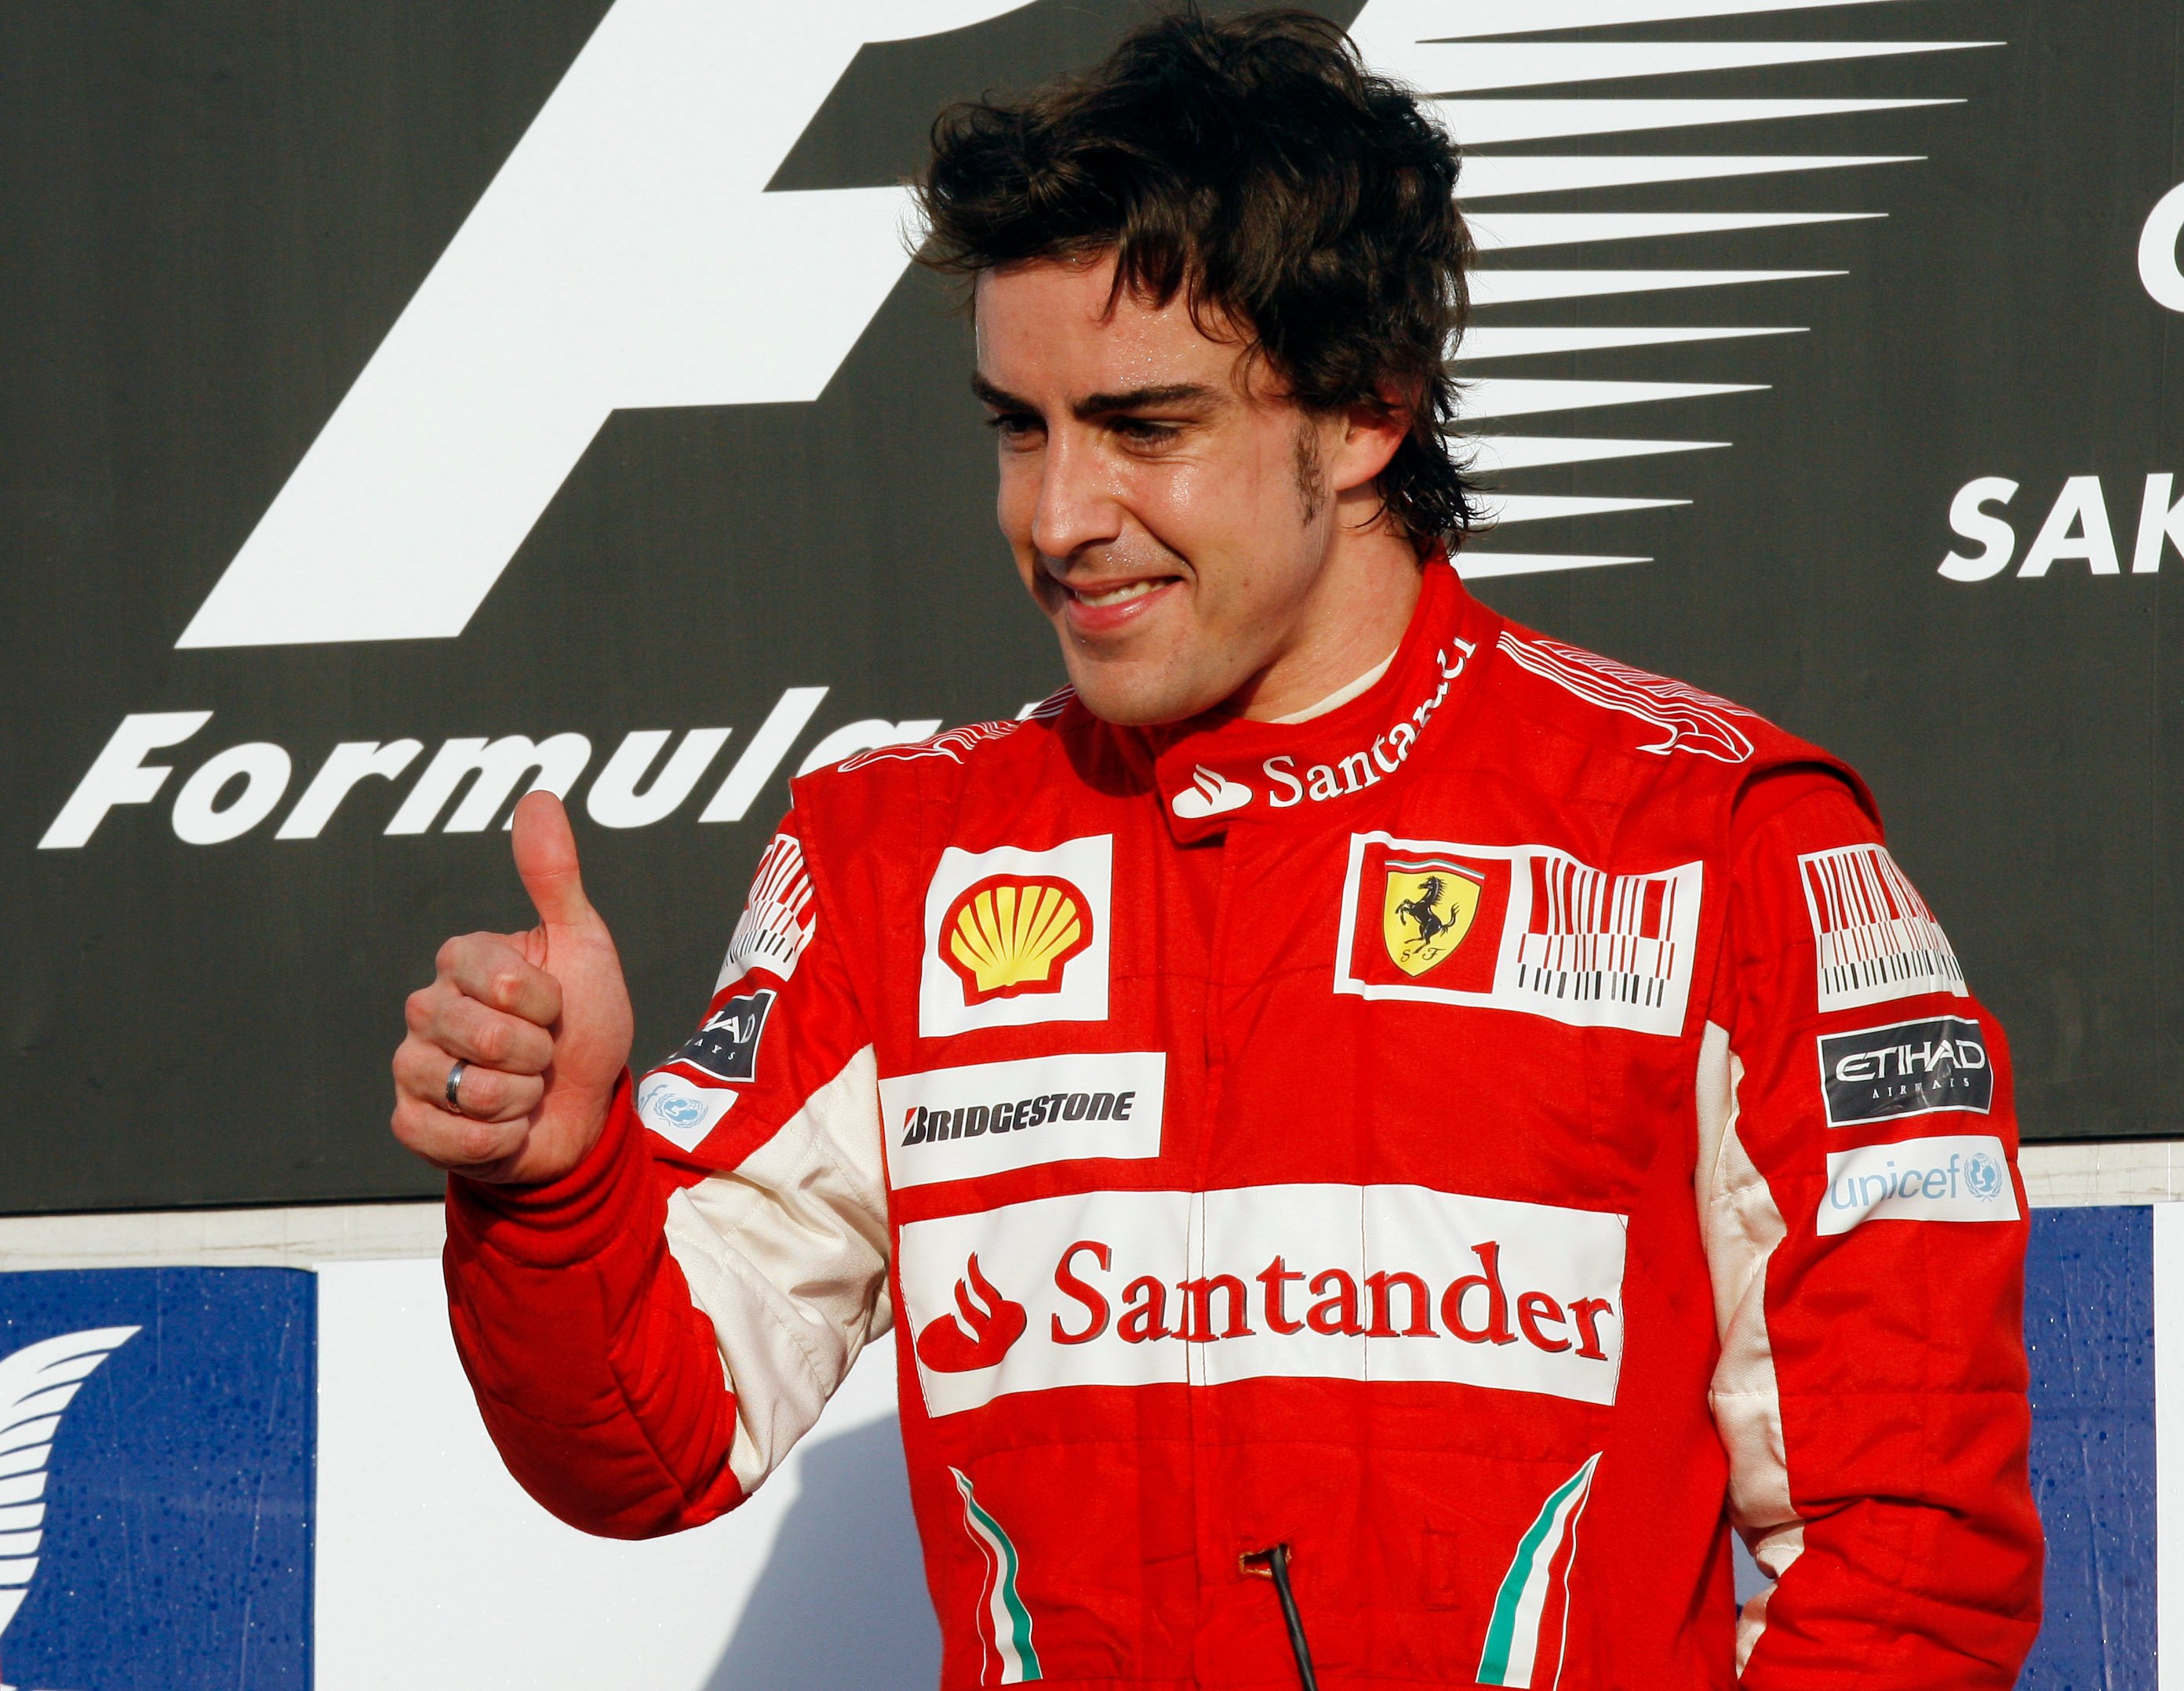 Formel 1, Försäkring, Ferrari, Fernando Alonso